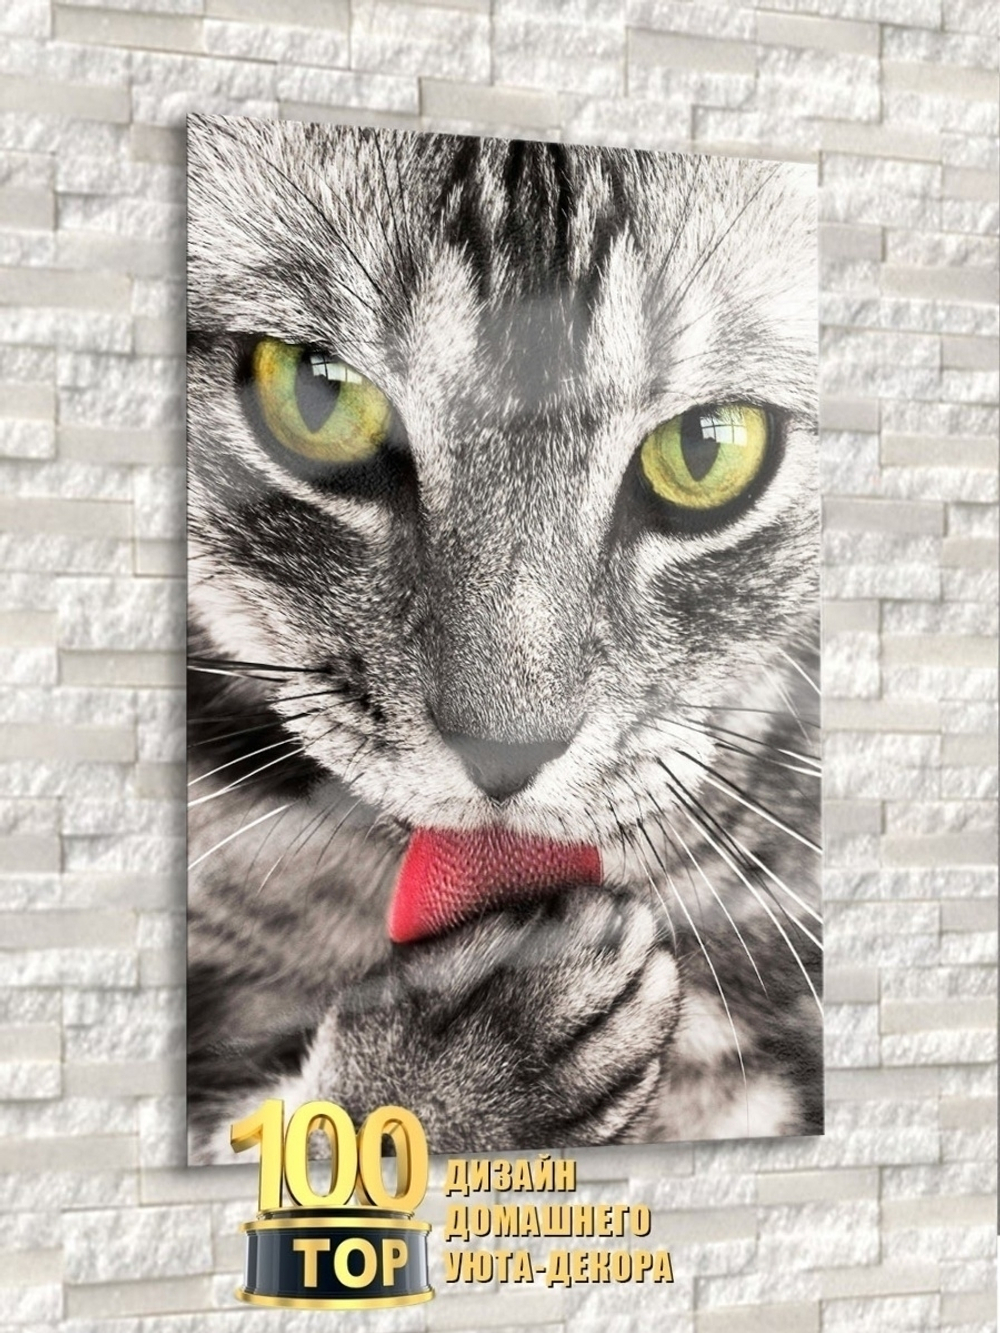 Модульная стеклянная интерьерная картина / Фотокартина на стекле / Серая кошка, 28x40 см. Декор для дома, подарок